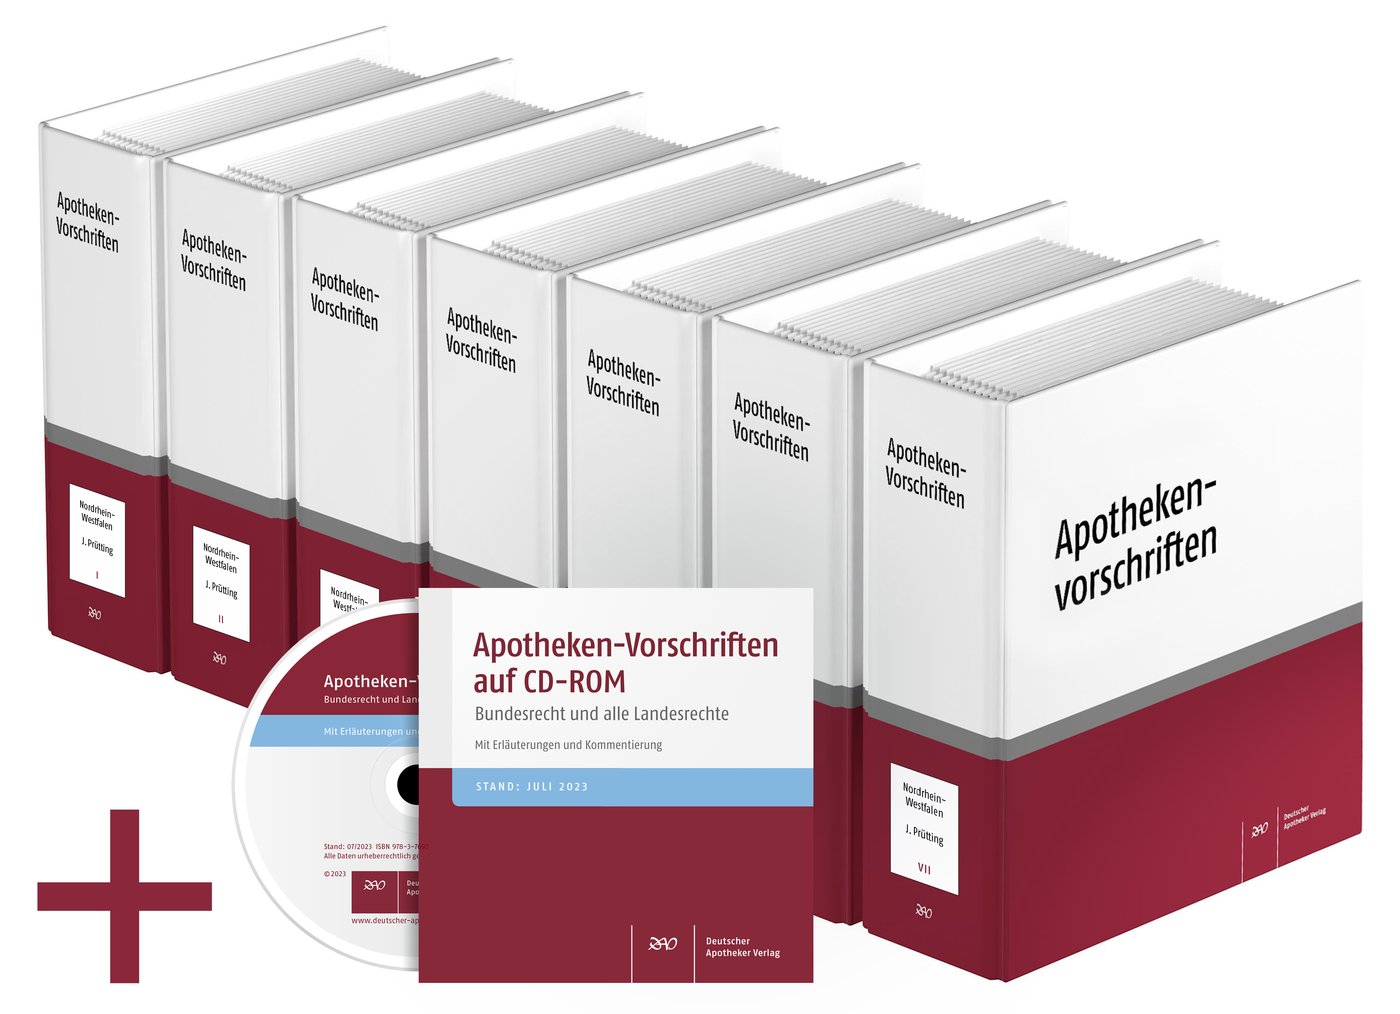 Apotheken-Vorschriften in Nordrhein-Westfalen